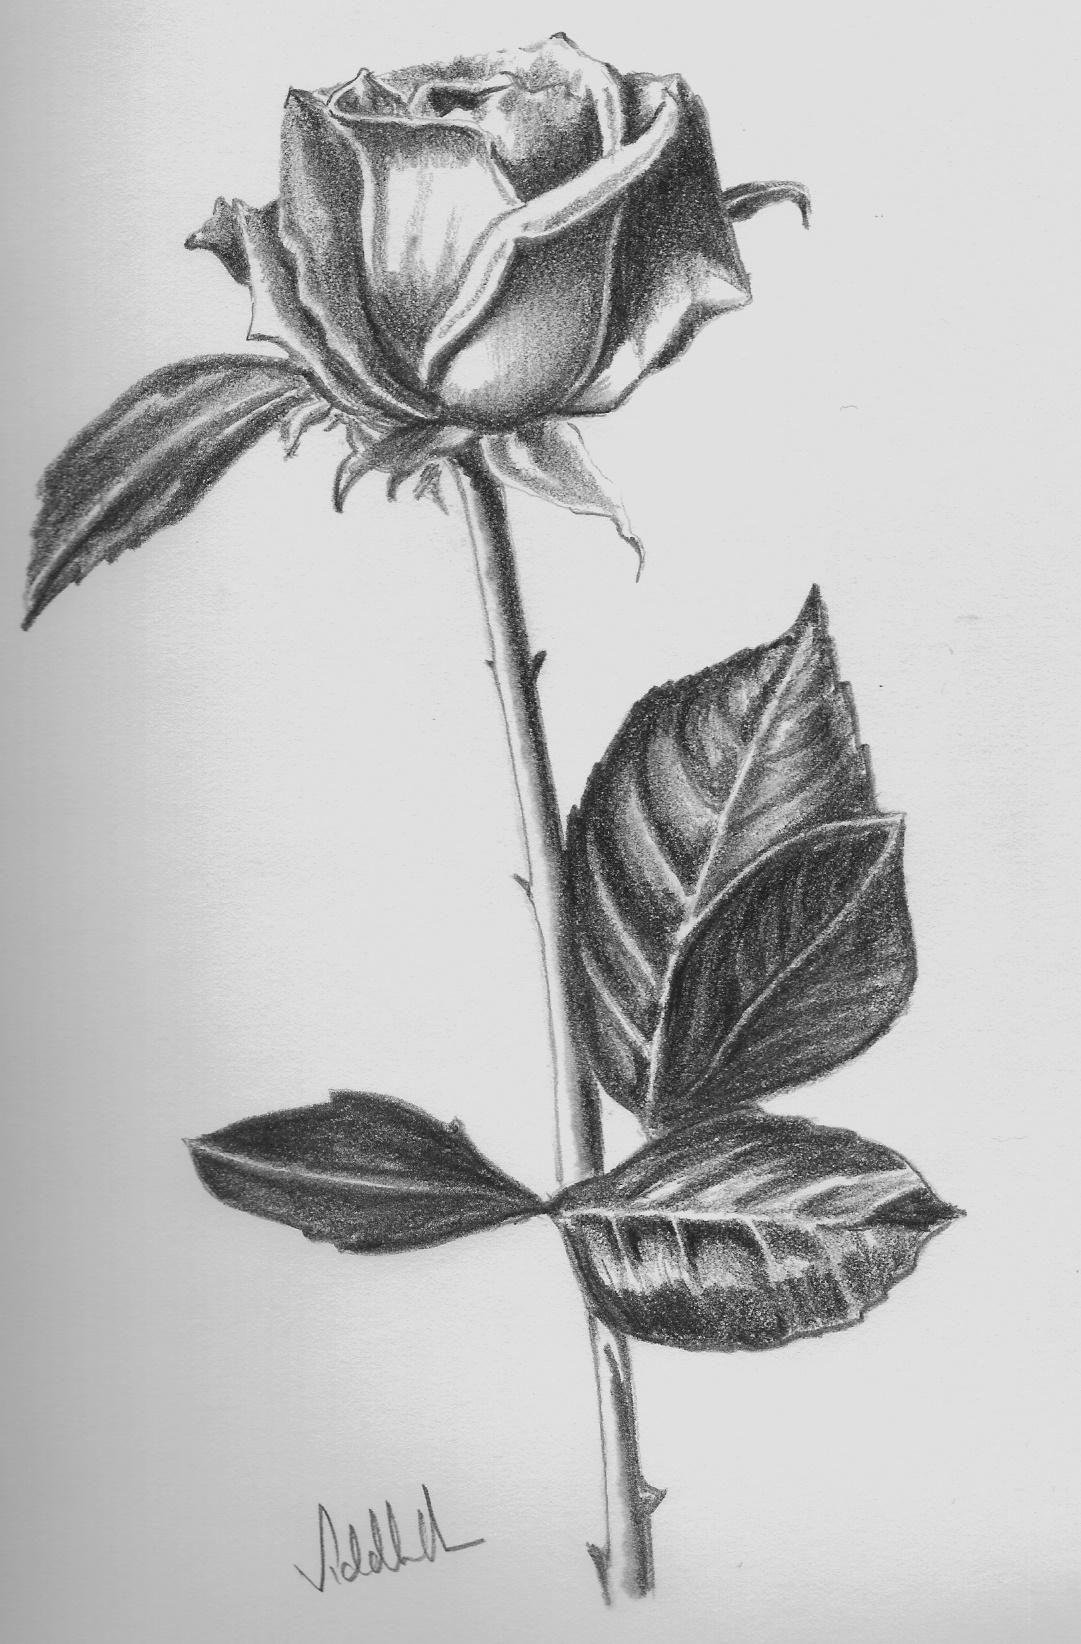 drawing beautiful roses. rose drawings rose symbol of love rose